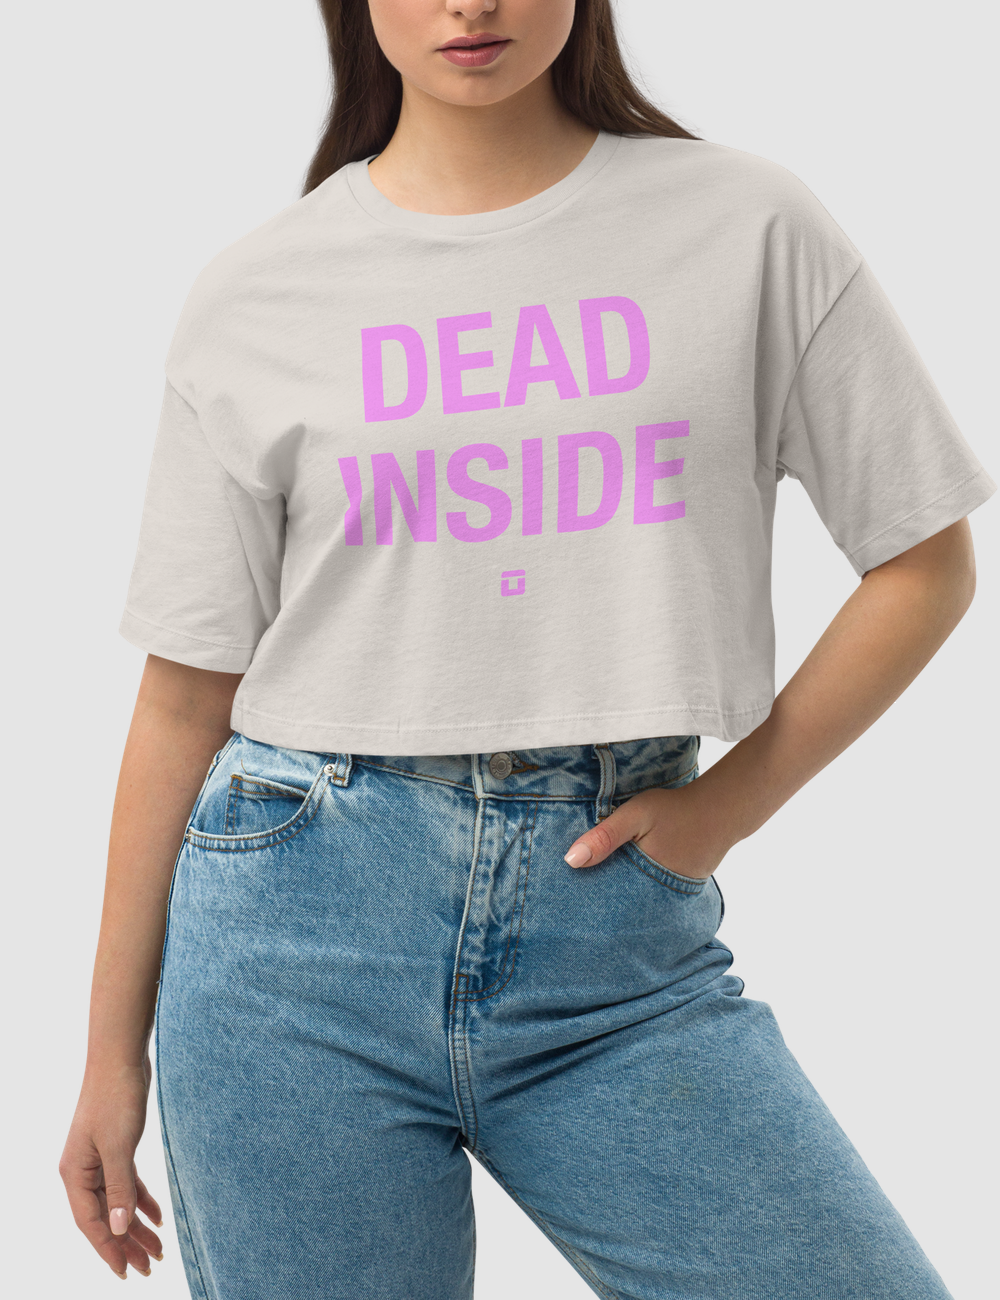 Dead Inside | Women's Loose Fit Crop Top T-Shirt OniTakai